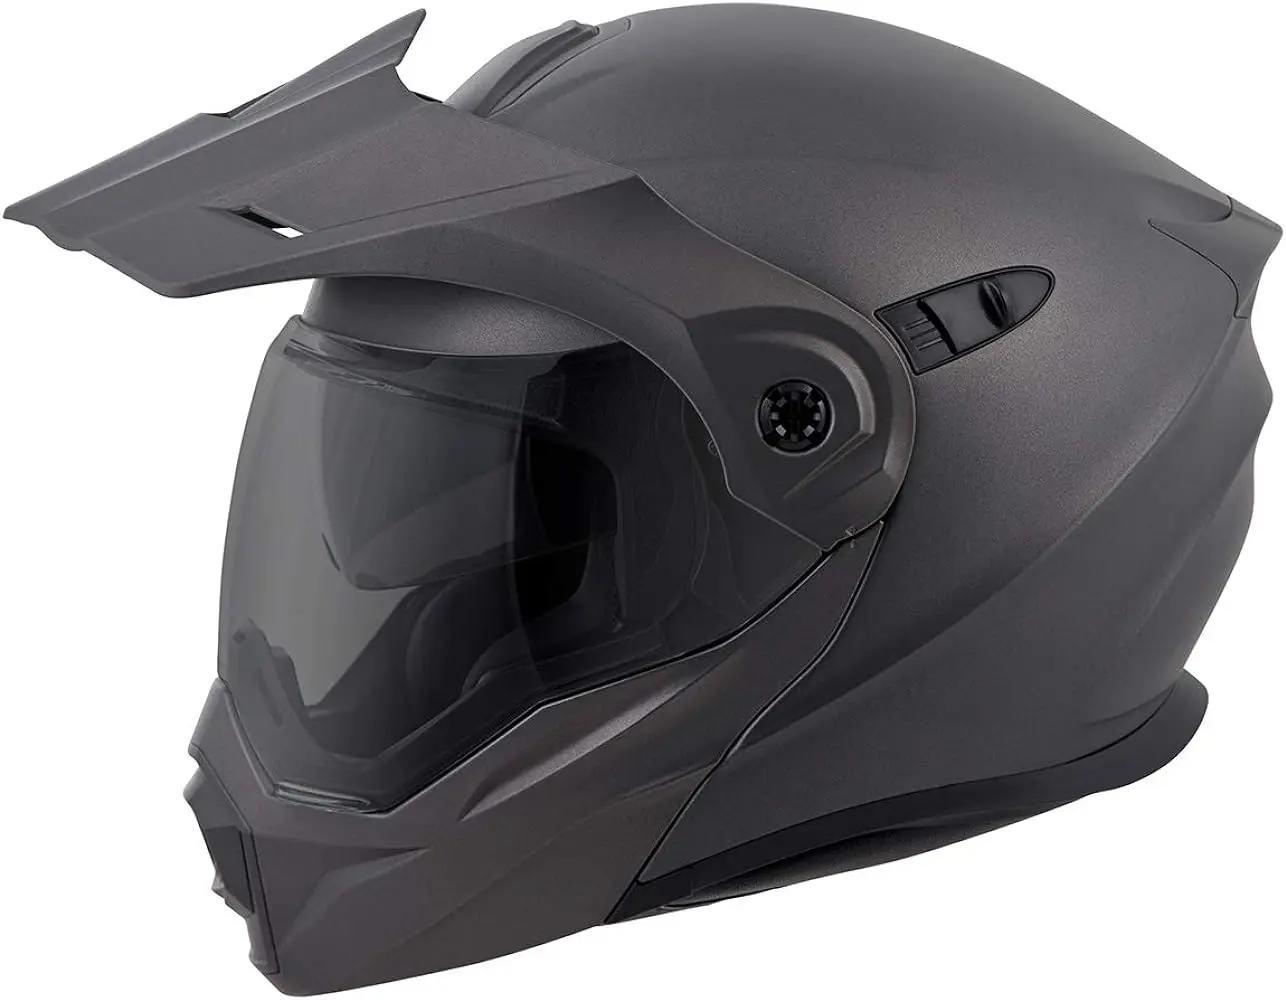 cascos de moto scorpion - Cuánto pesa un casco Scorpion